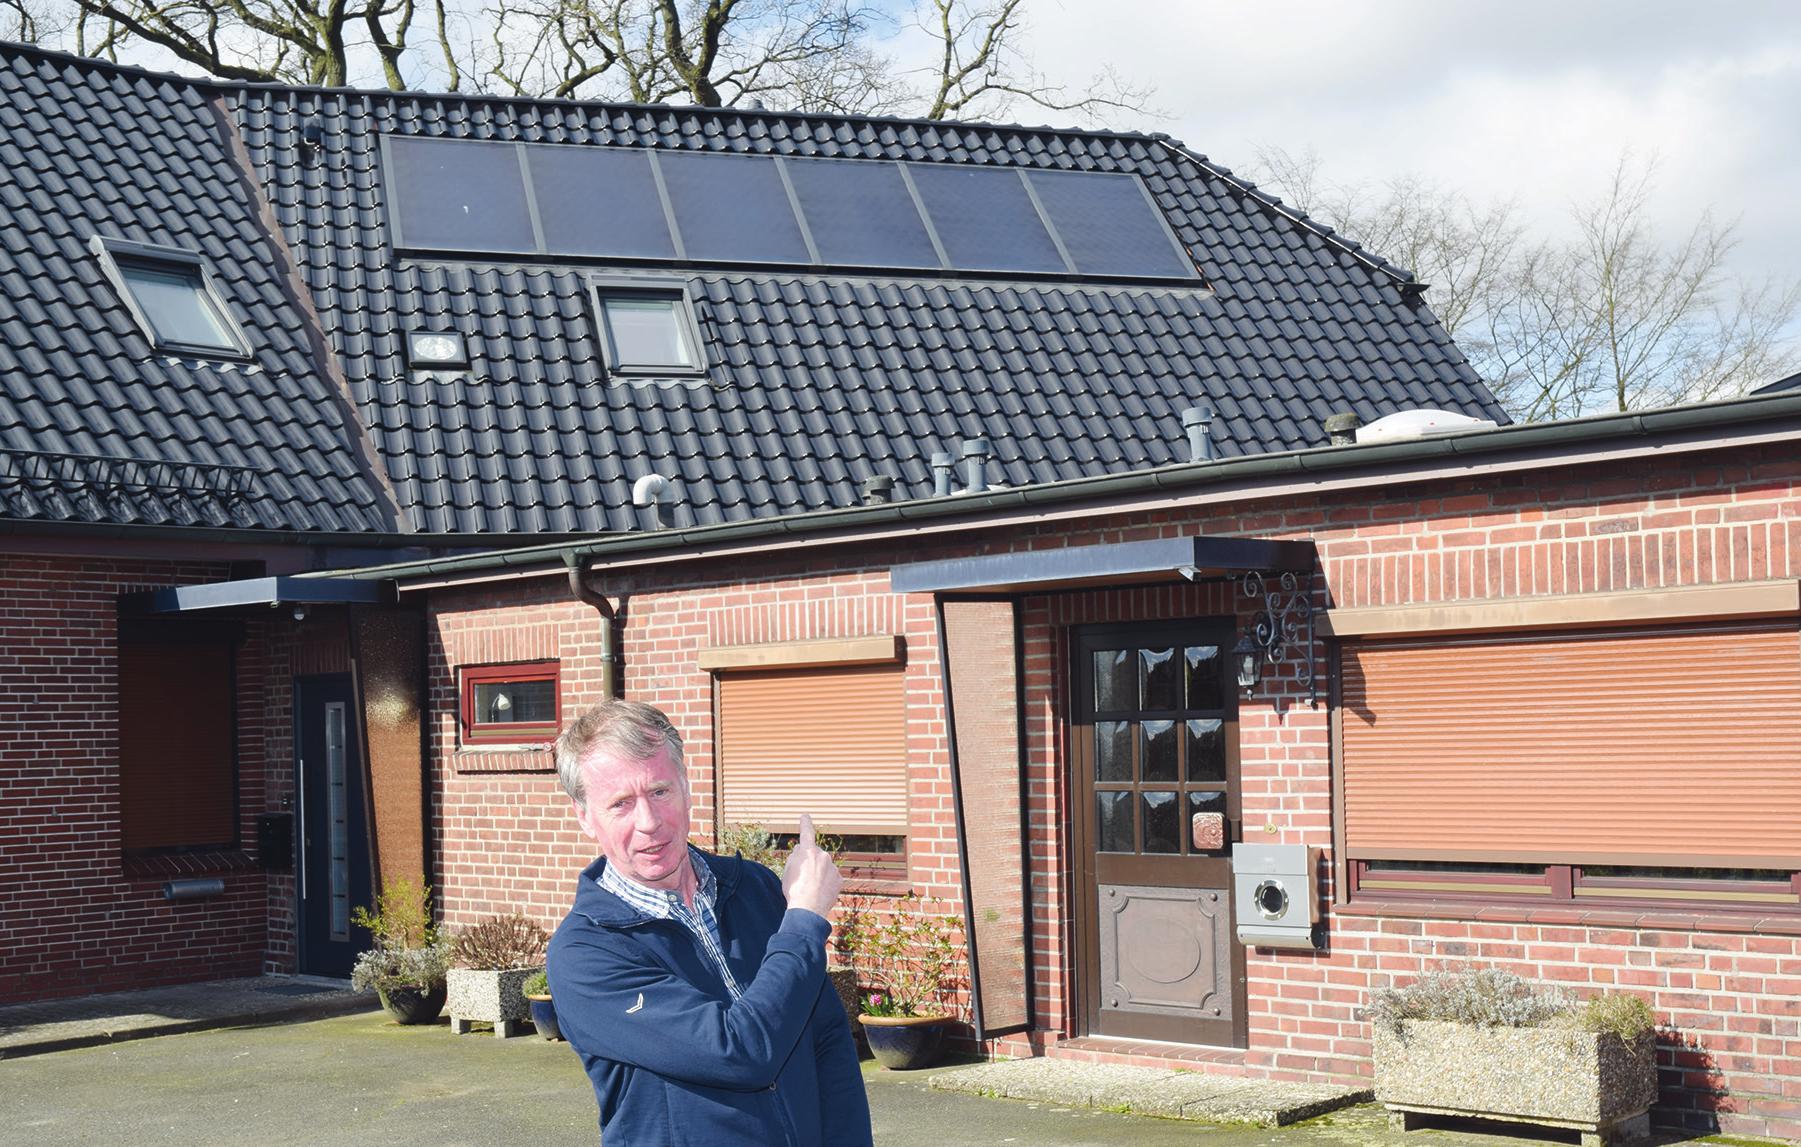 Uwe Brandt, Geschäftsführer der Adolf Brandt GmbH in Halstenbek, unterstützt seine mit Gas betriebene Brennwertheizung mit Solarkollektoren, die auf dem Dach Sonnenwärme für Heizung und Warmwasser sammeln. Für diesen Mix gibt es Zuschüsse vom Staat bei der Heizungsmodernisierung Foto: Kuno Klein